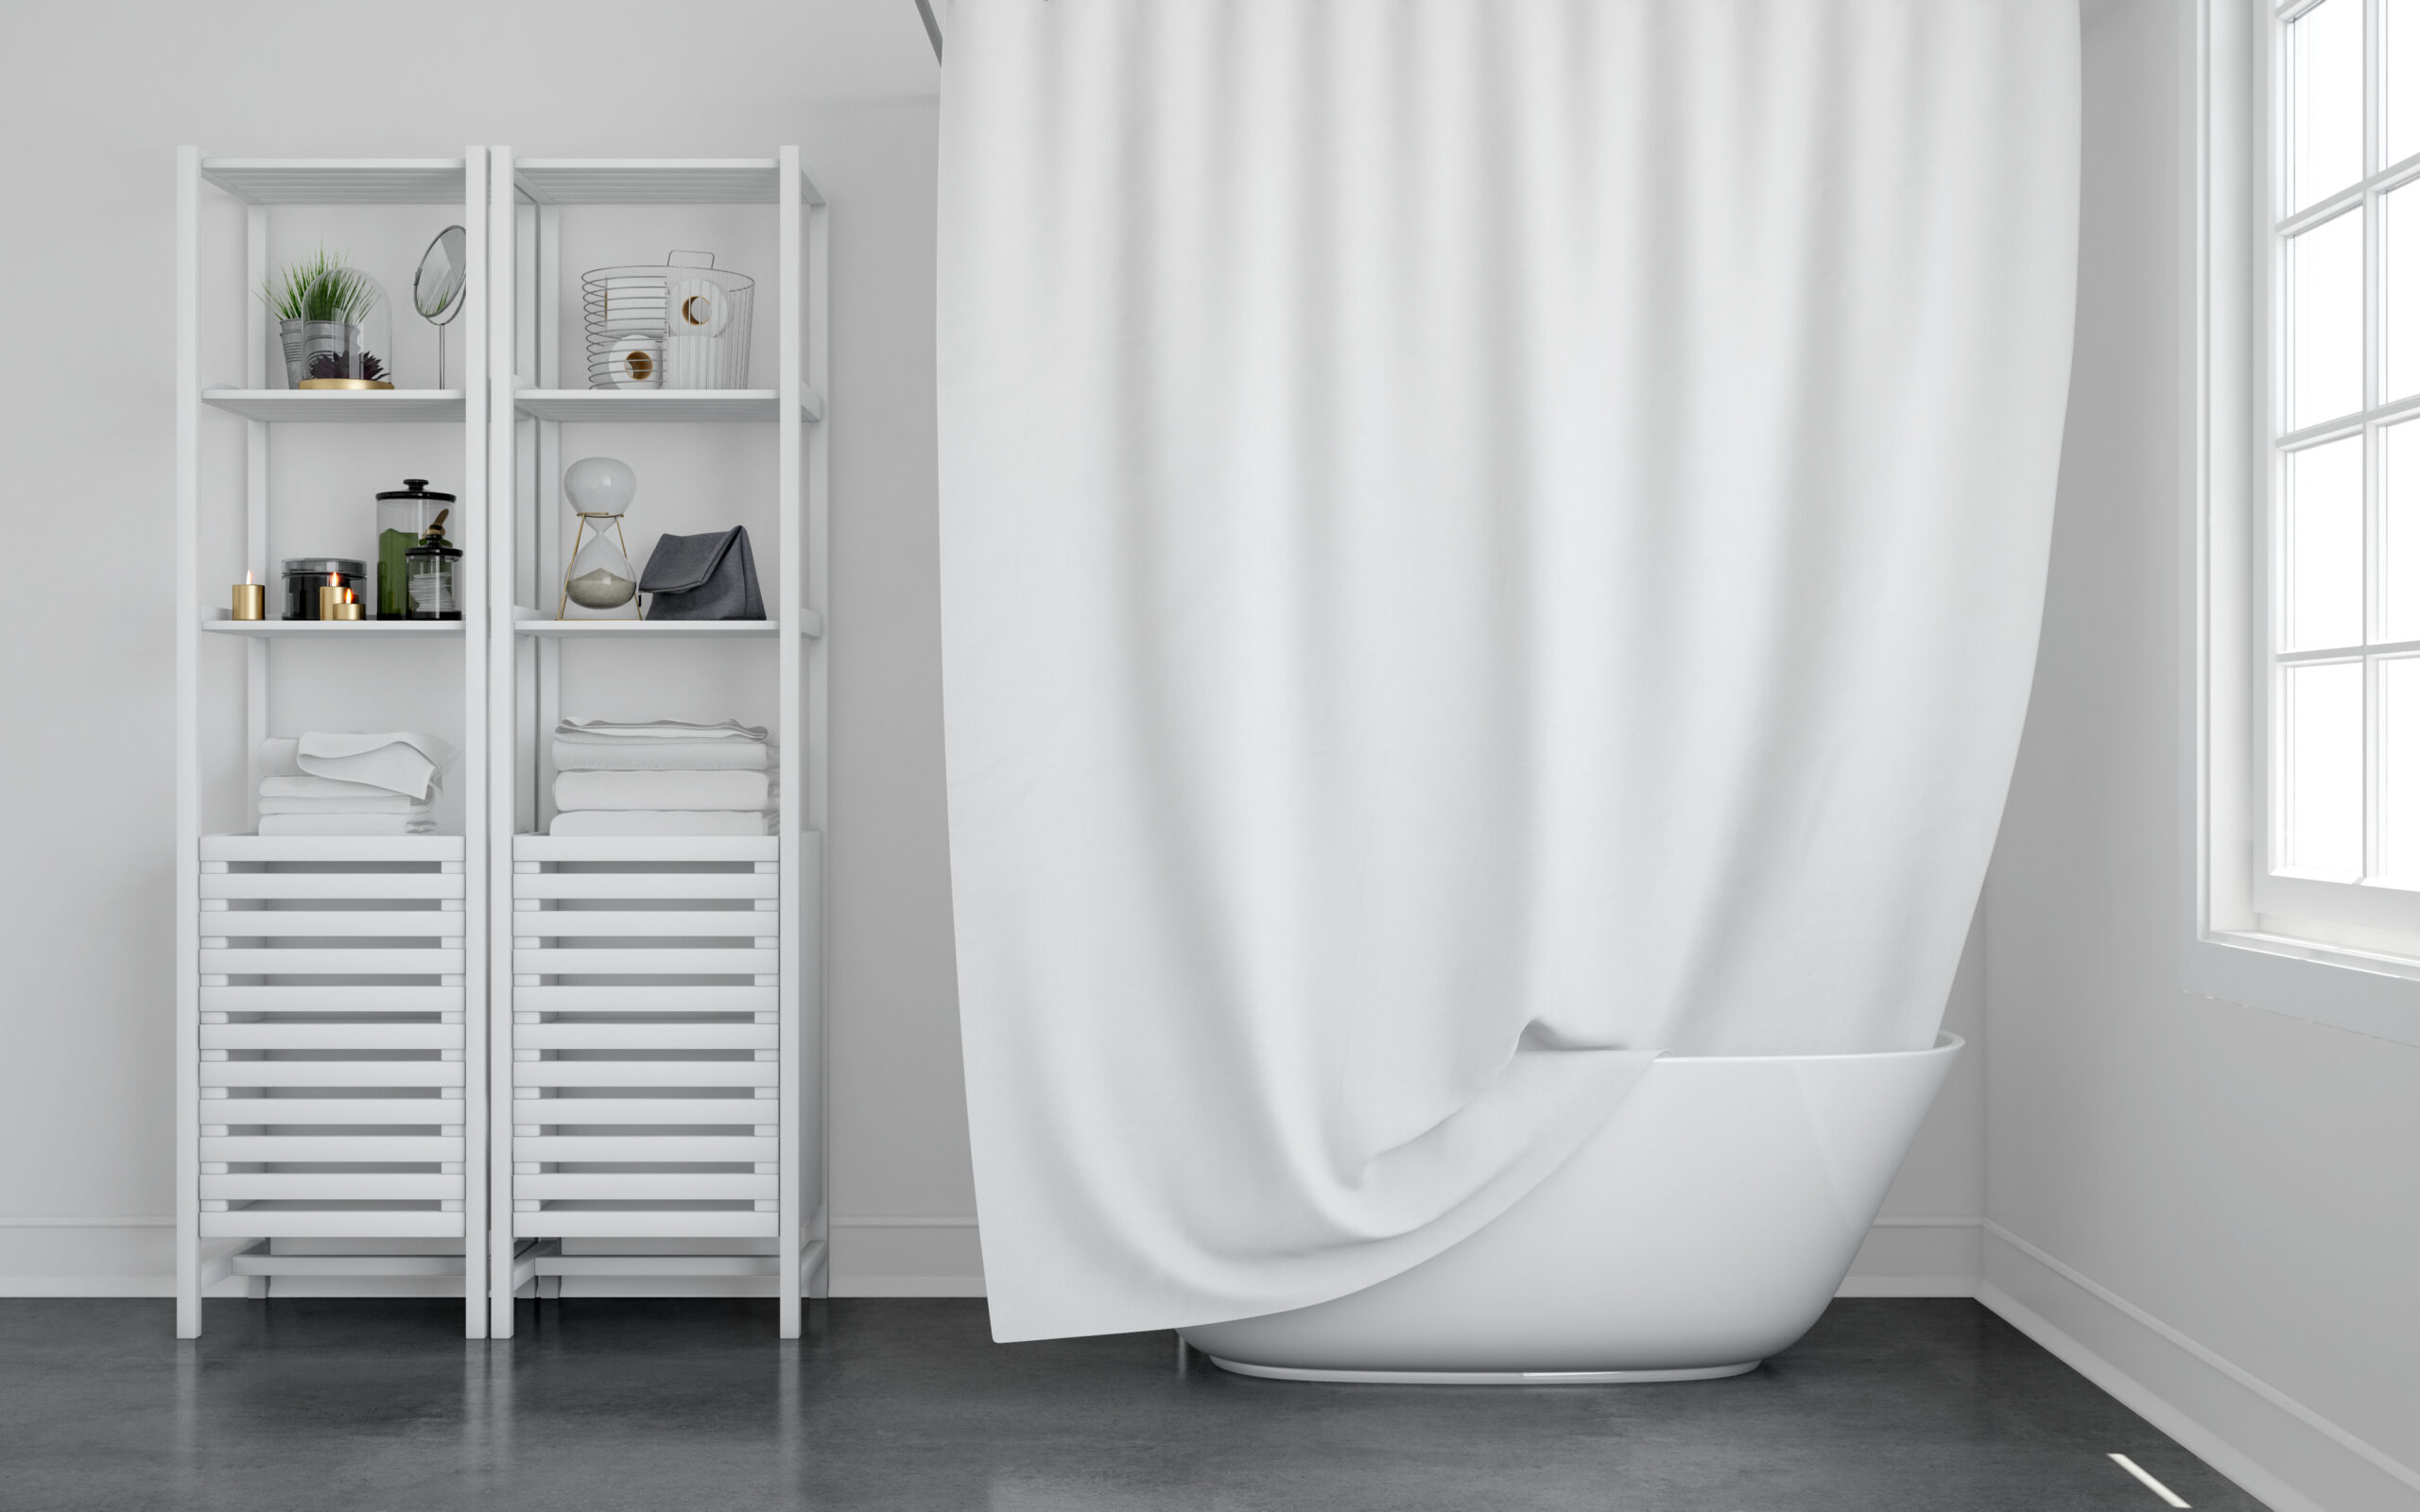 Cuarto de baño con cortinas blancas, representando la necesidad de limpiarlas regularmente para evitar la aparición de moho